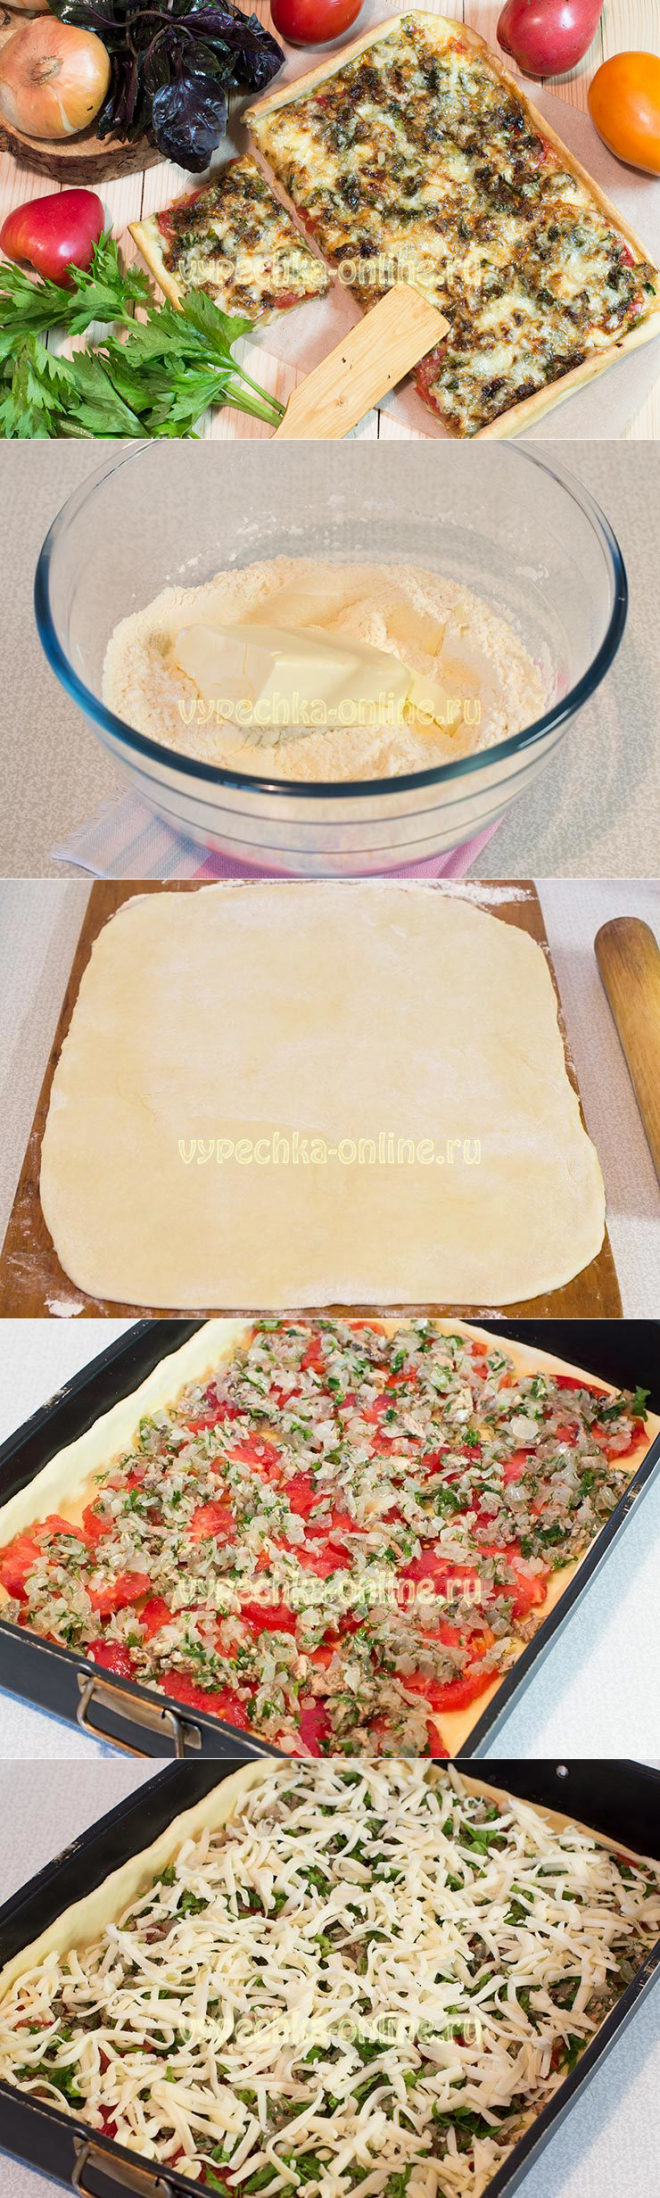 что нужно для пиццы в домашних условиях ингредиенты духовке фото 68